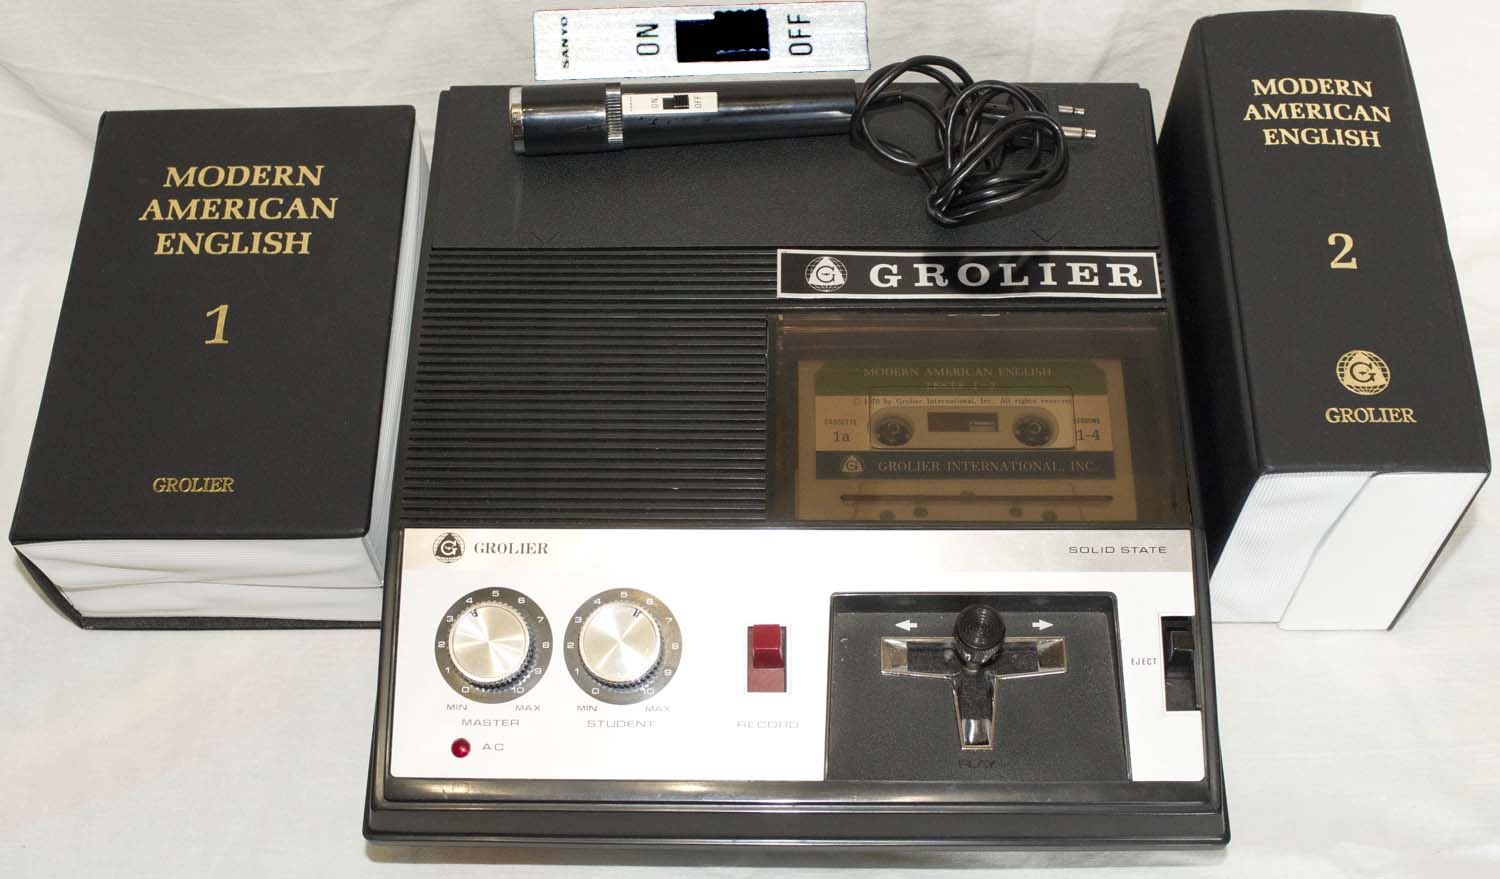 Лингафонная система "Modern American English" фирмы Grolier - Sanyo с магнитофоном, микрофоном, наушниками и кассетами 1970-е годы